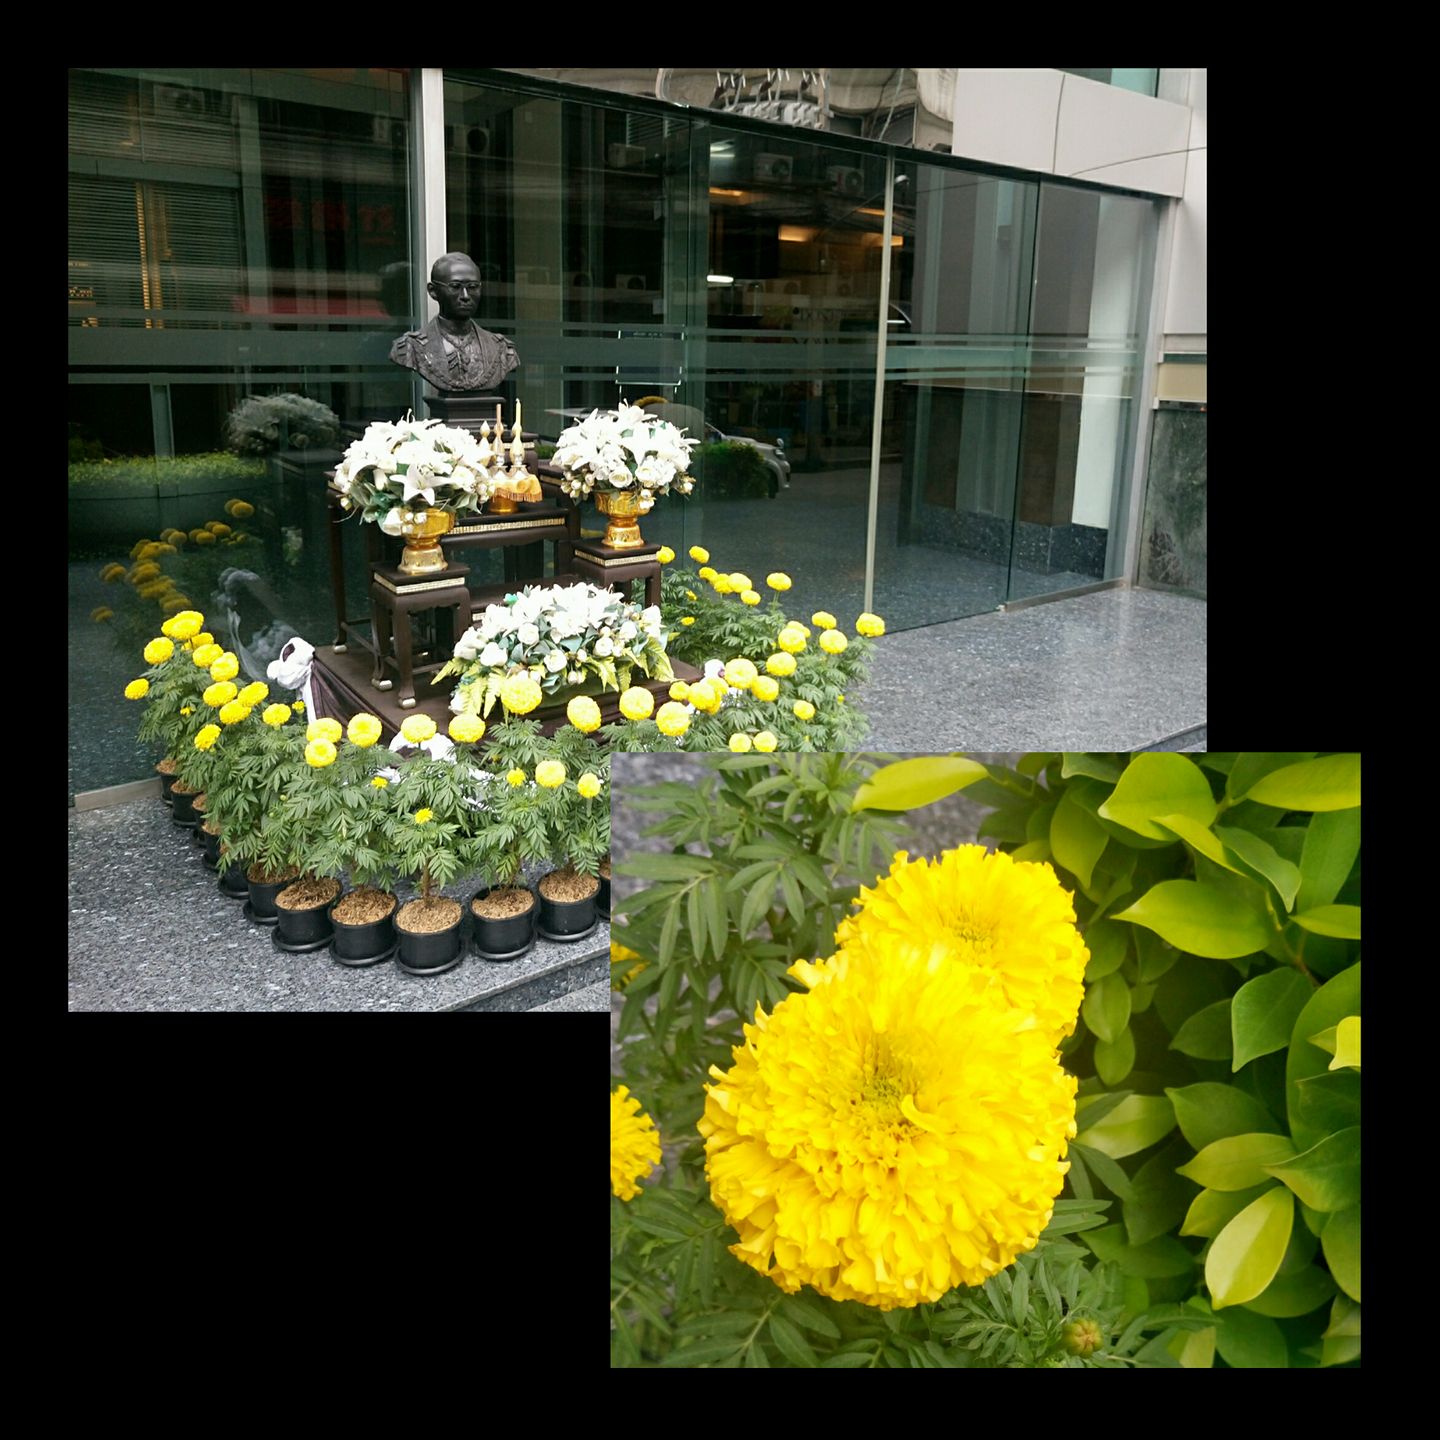 いまタイの街にあふれる黄色い花の正体 朝日ビジネスソリューションタイランド